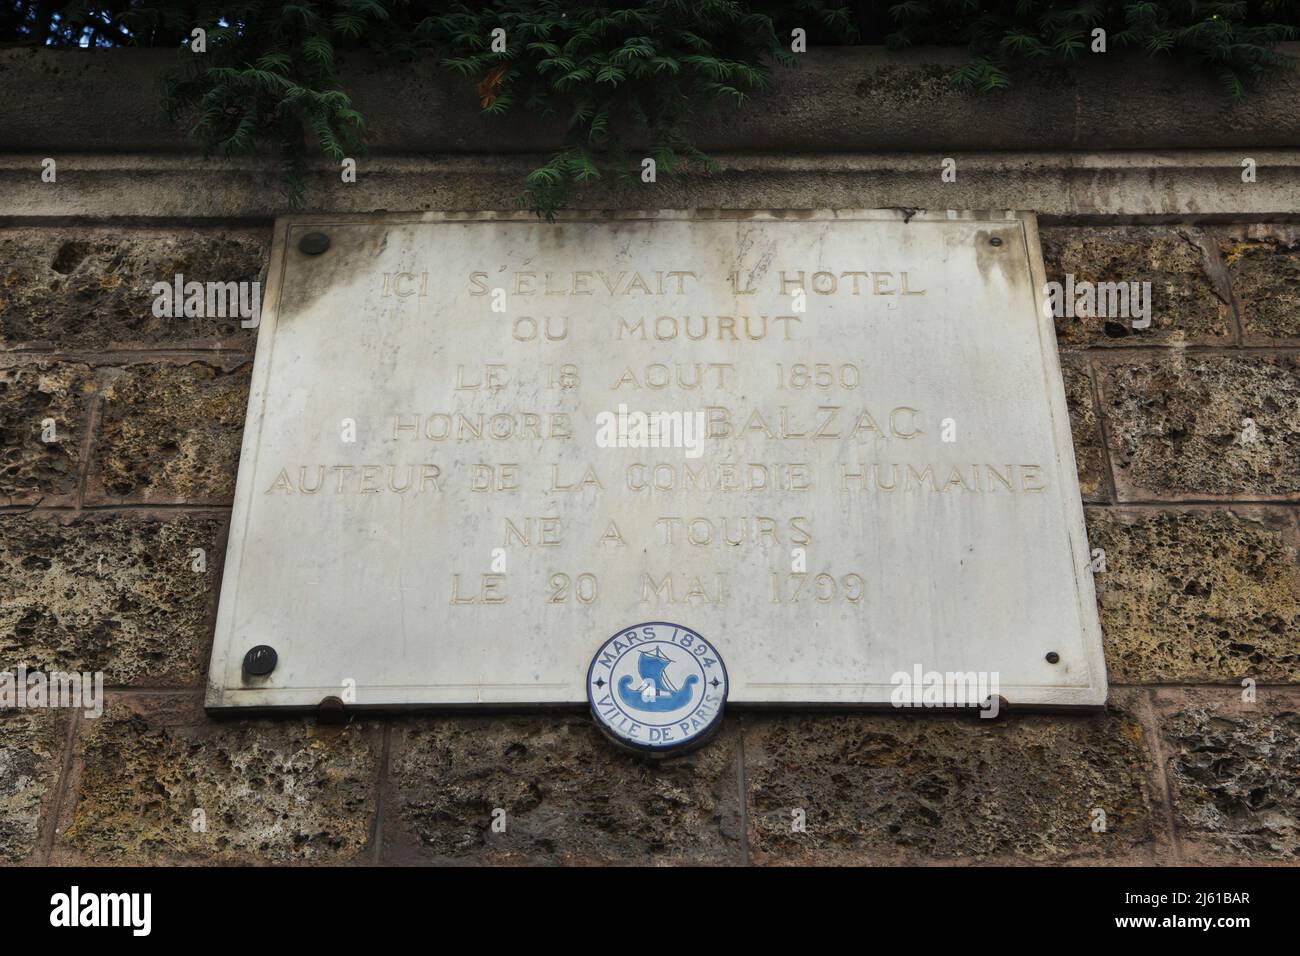 Gedenktafel für den französischen Schriftsteller Honoré de Balzac auf dem Hôtel Salomon de Rothschild in Paris, Frankreich. Honoré de Balzac starb an diesem Ort am 18. August 1850. Stockfoto